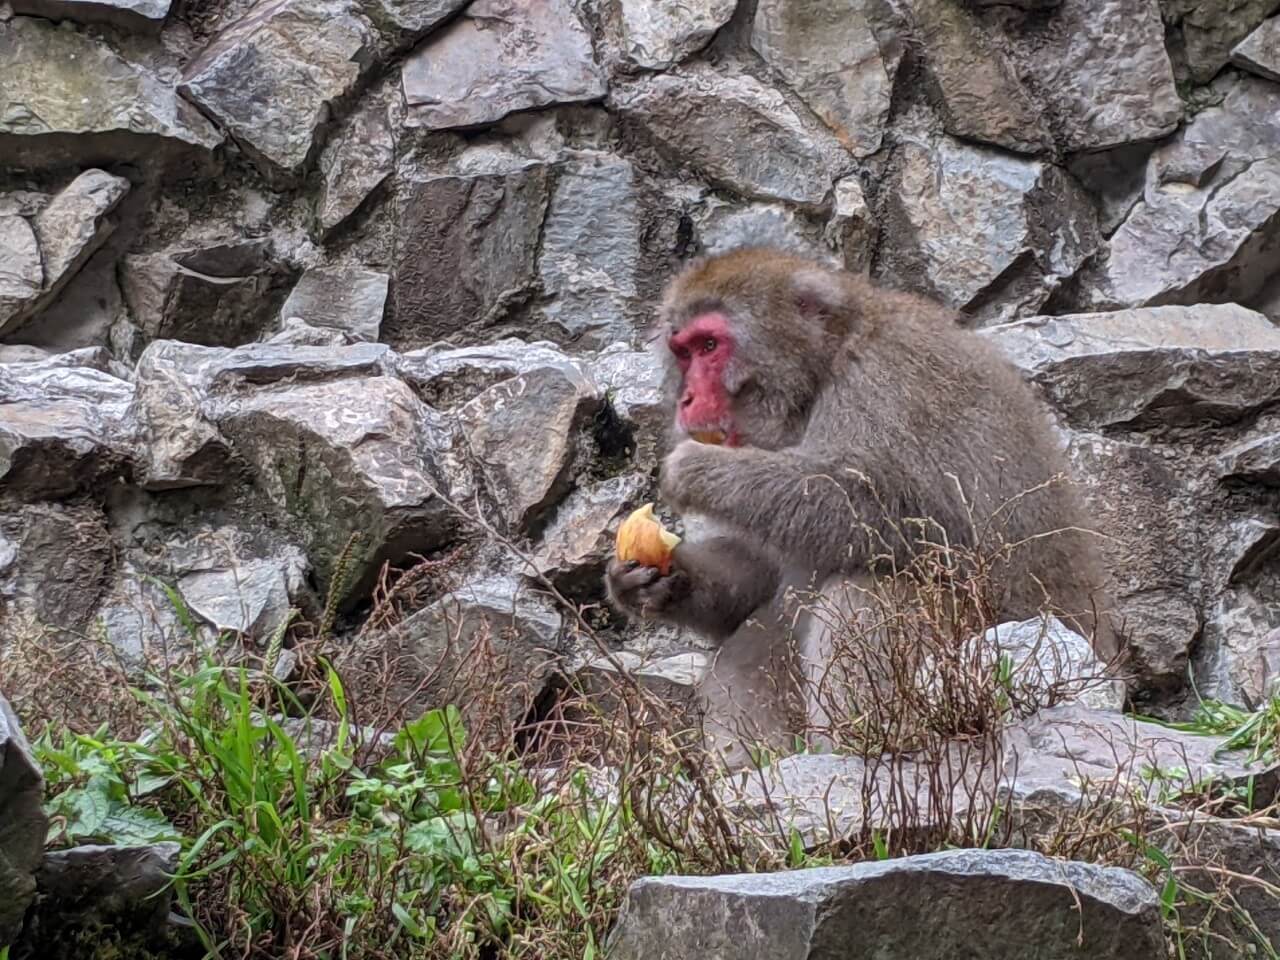 jigokudani-monkey-park-october-2021